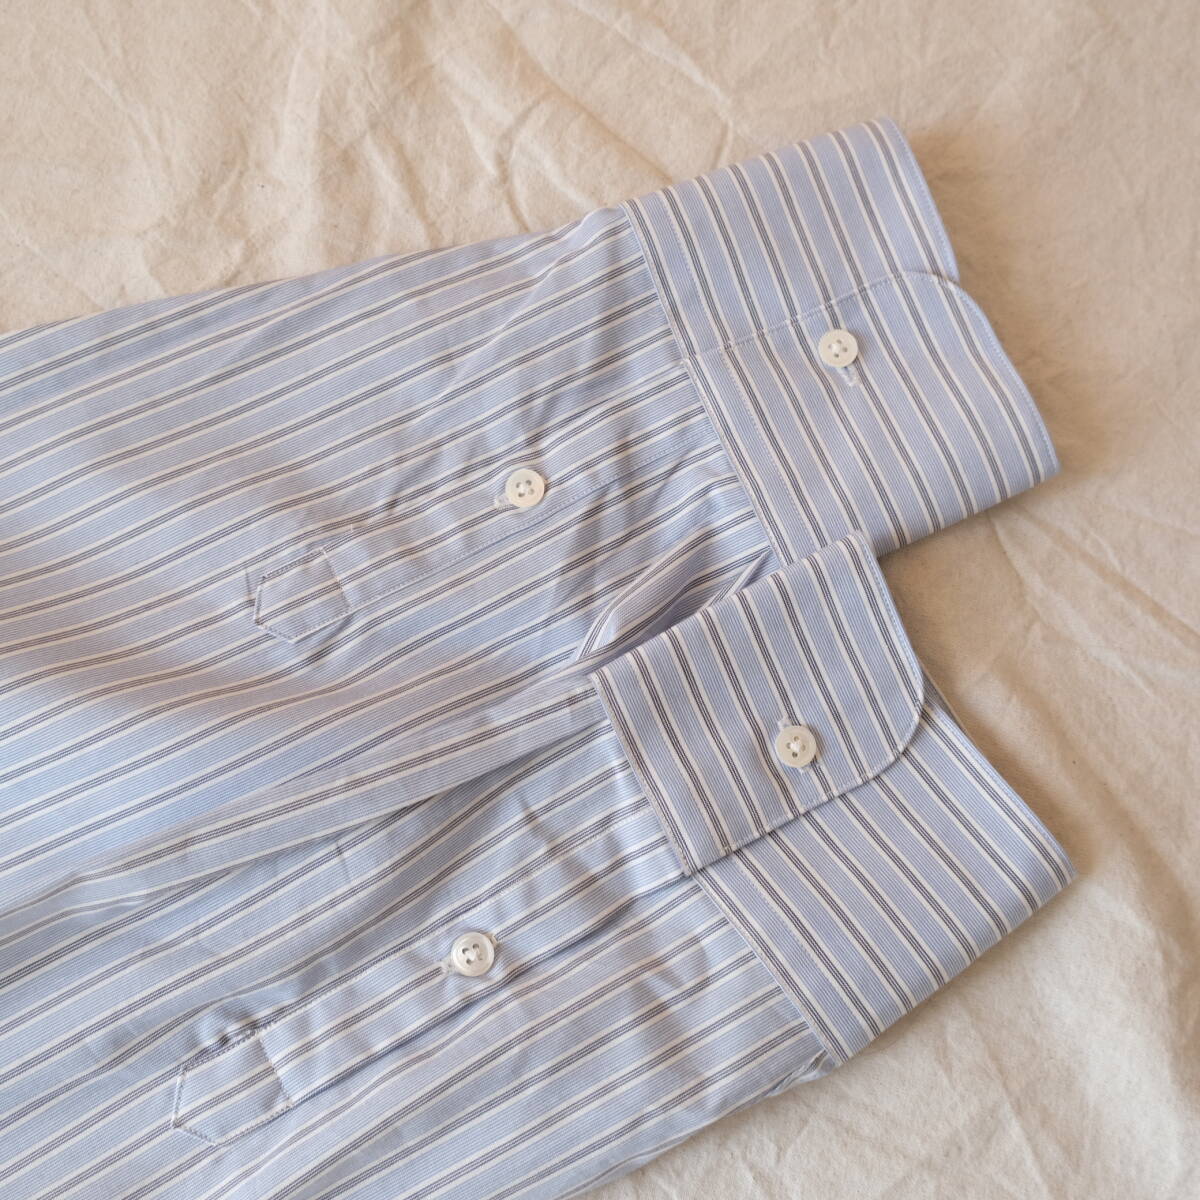  не использовался 90s[ GIORGIO ARMANI ]joru geo Armani ko let's .-ni полоса рубашка с длинным рукавом / голубой серия / 15.5 / Vintage old